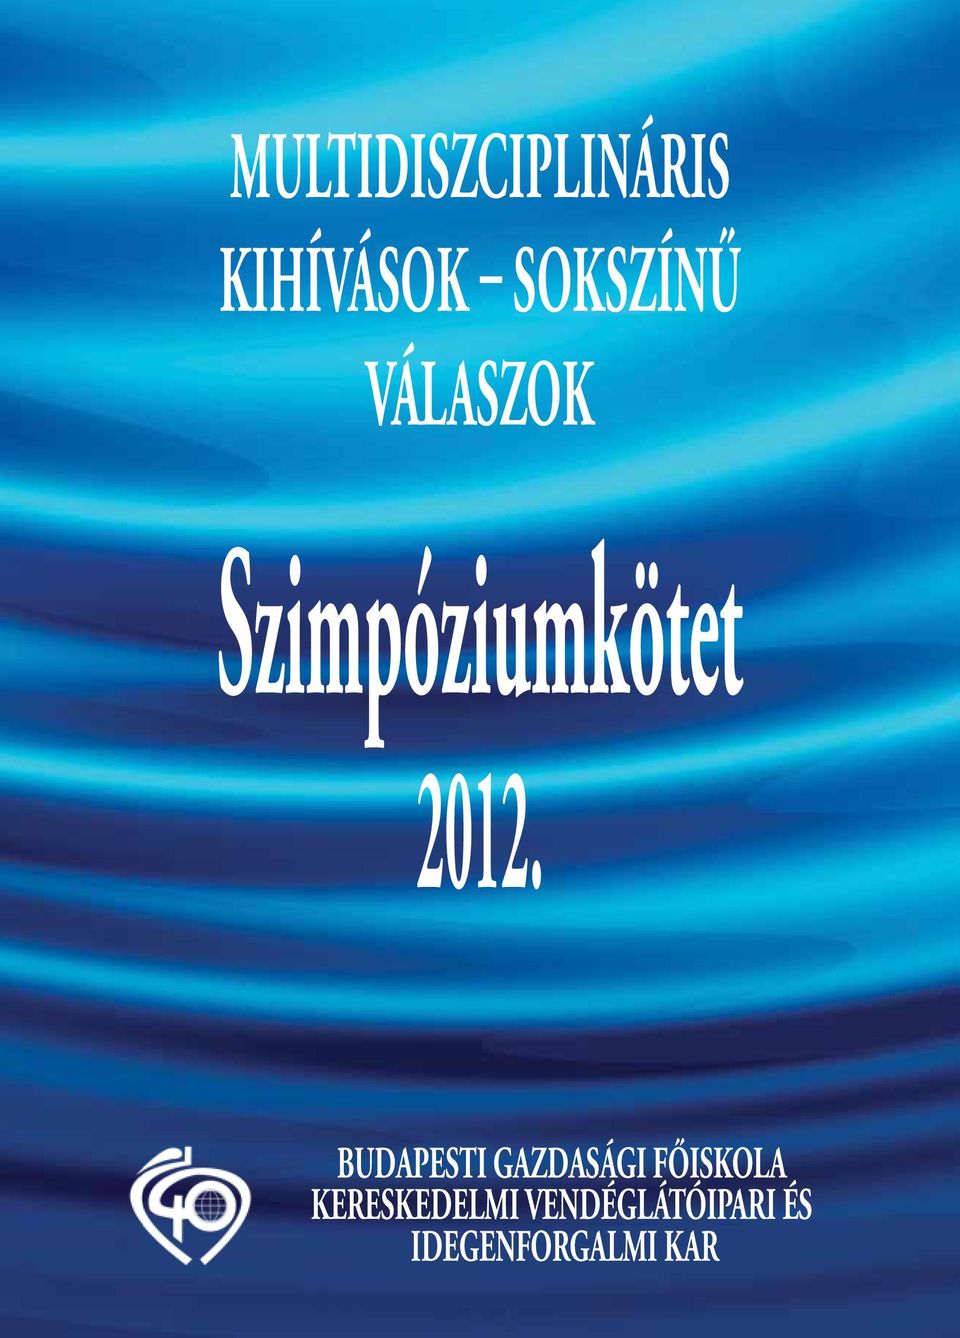 2012. BUDAPESTI GAZDASÁGI FŐISKOLA